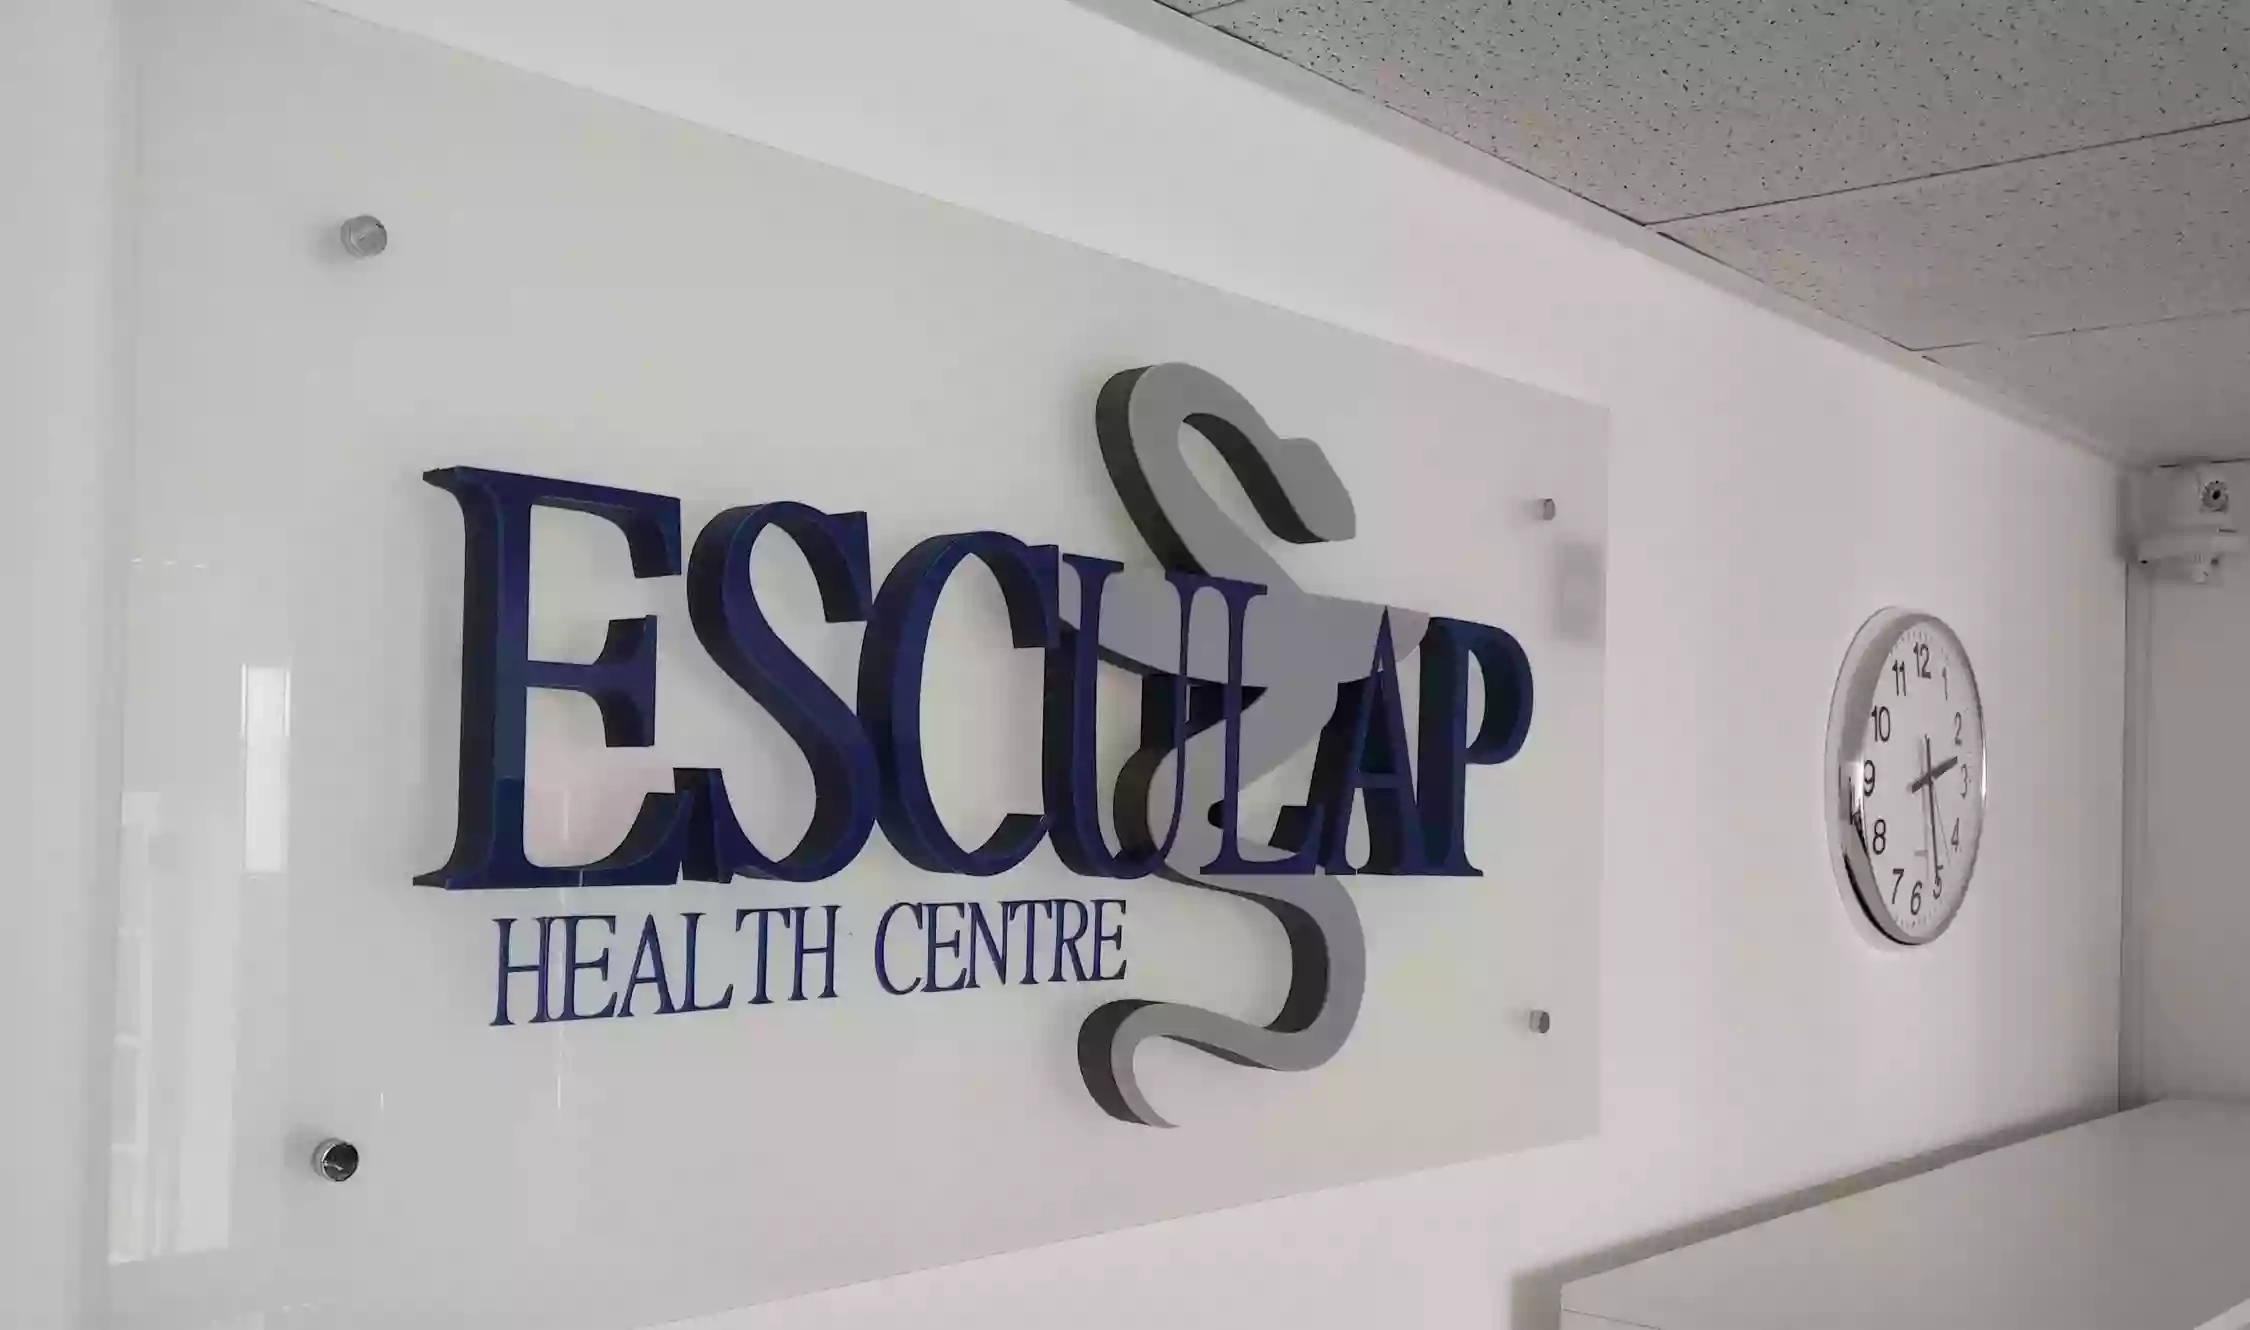 Esculap Health Centre